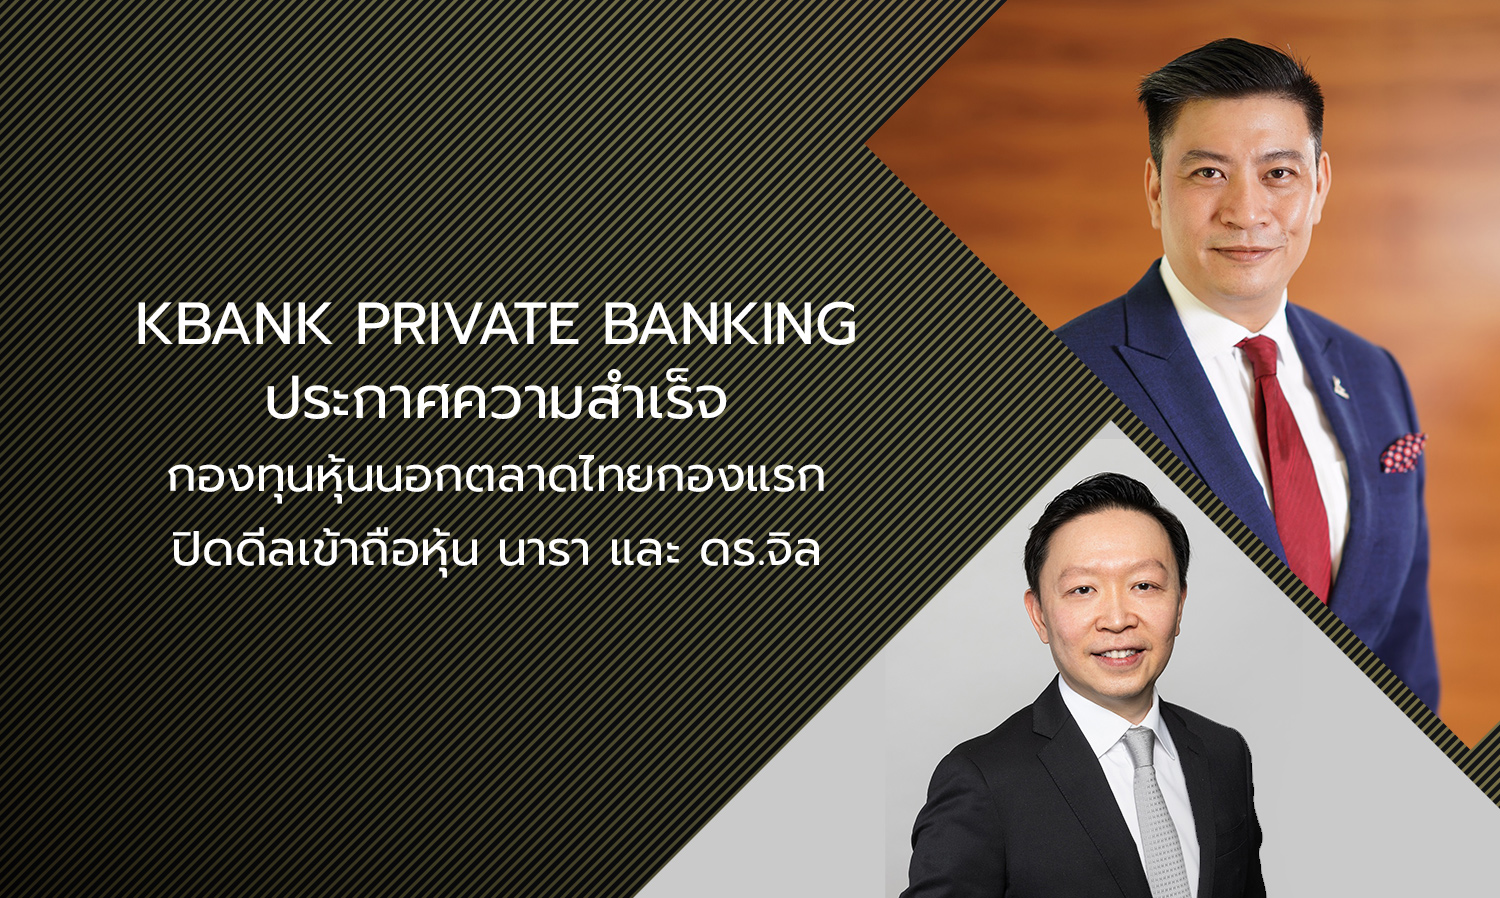 KBank Private Banking ประกาศความสำเร็จกองทุนหุ้นนอกตลาดไทยกองแรก ปิดดีลเข้าถือหุ้น นารา และ ดร.จิล